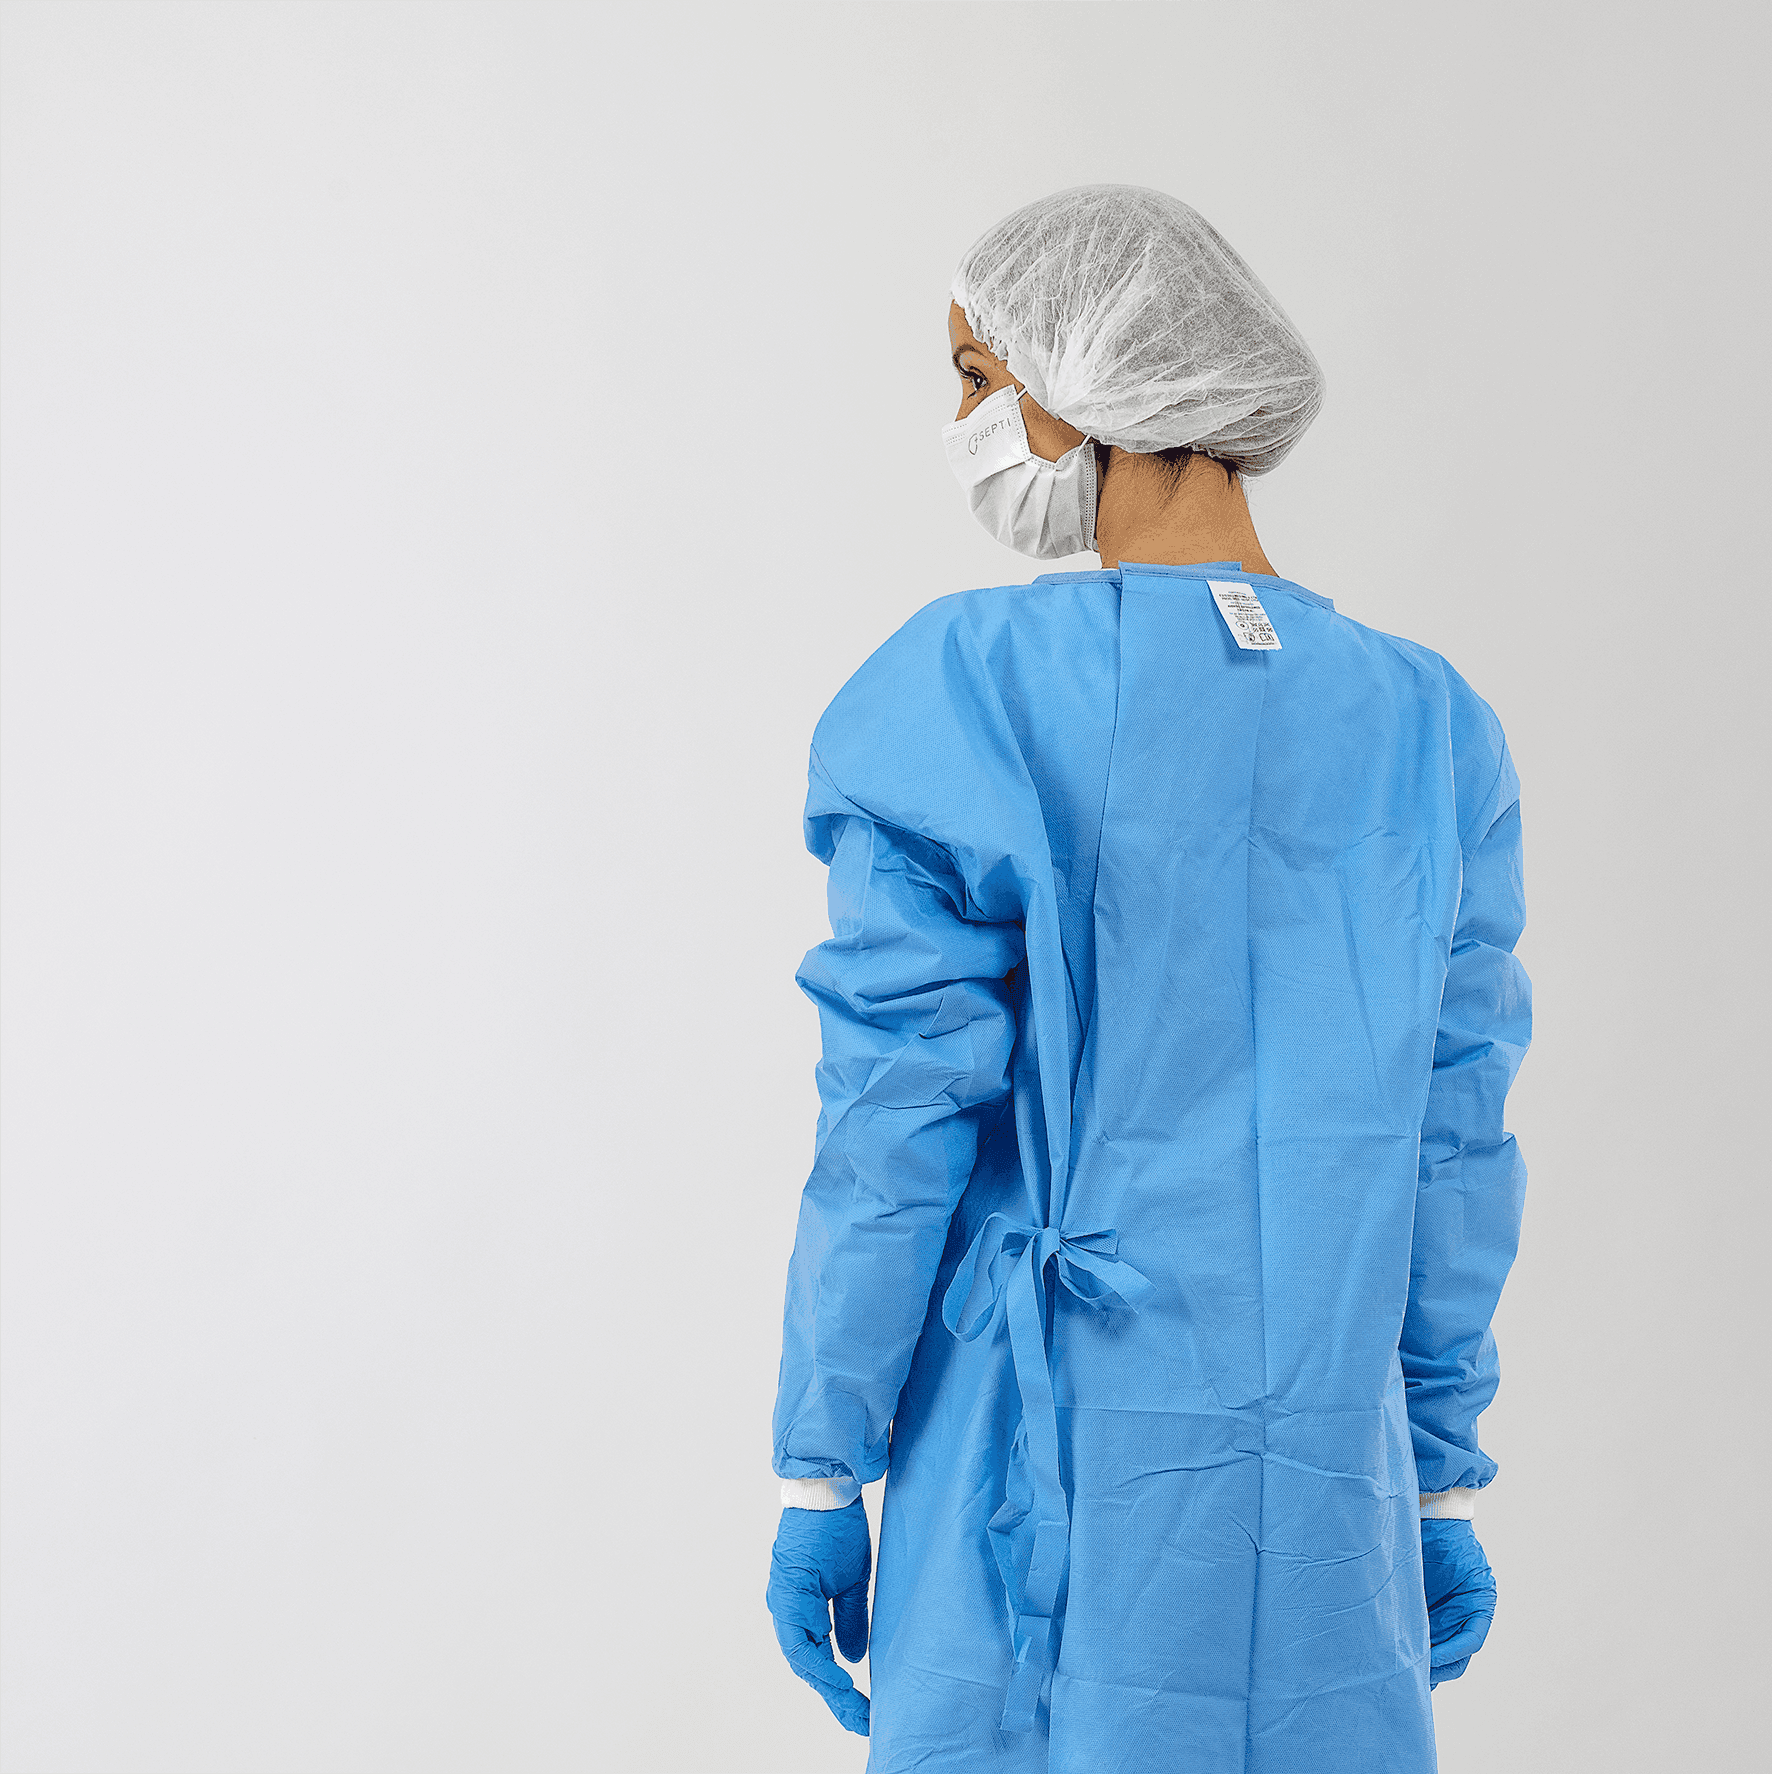 Avental Cirúrgico com mangas. Avental SMMMS. Avental Azul Cirúrgico. Jaleco cirúrgico.